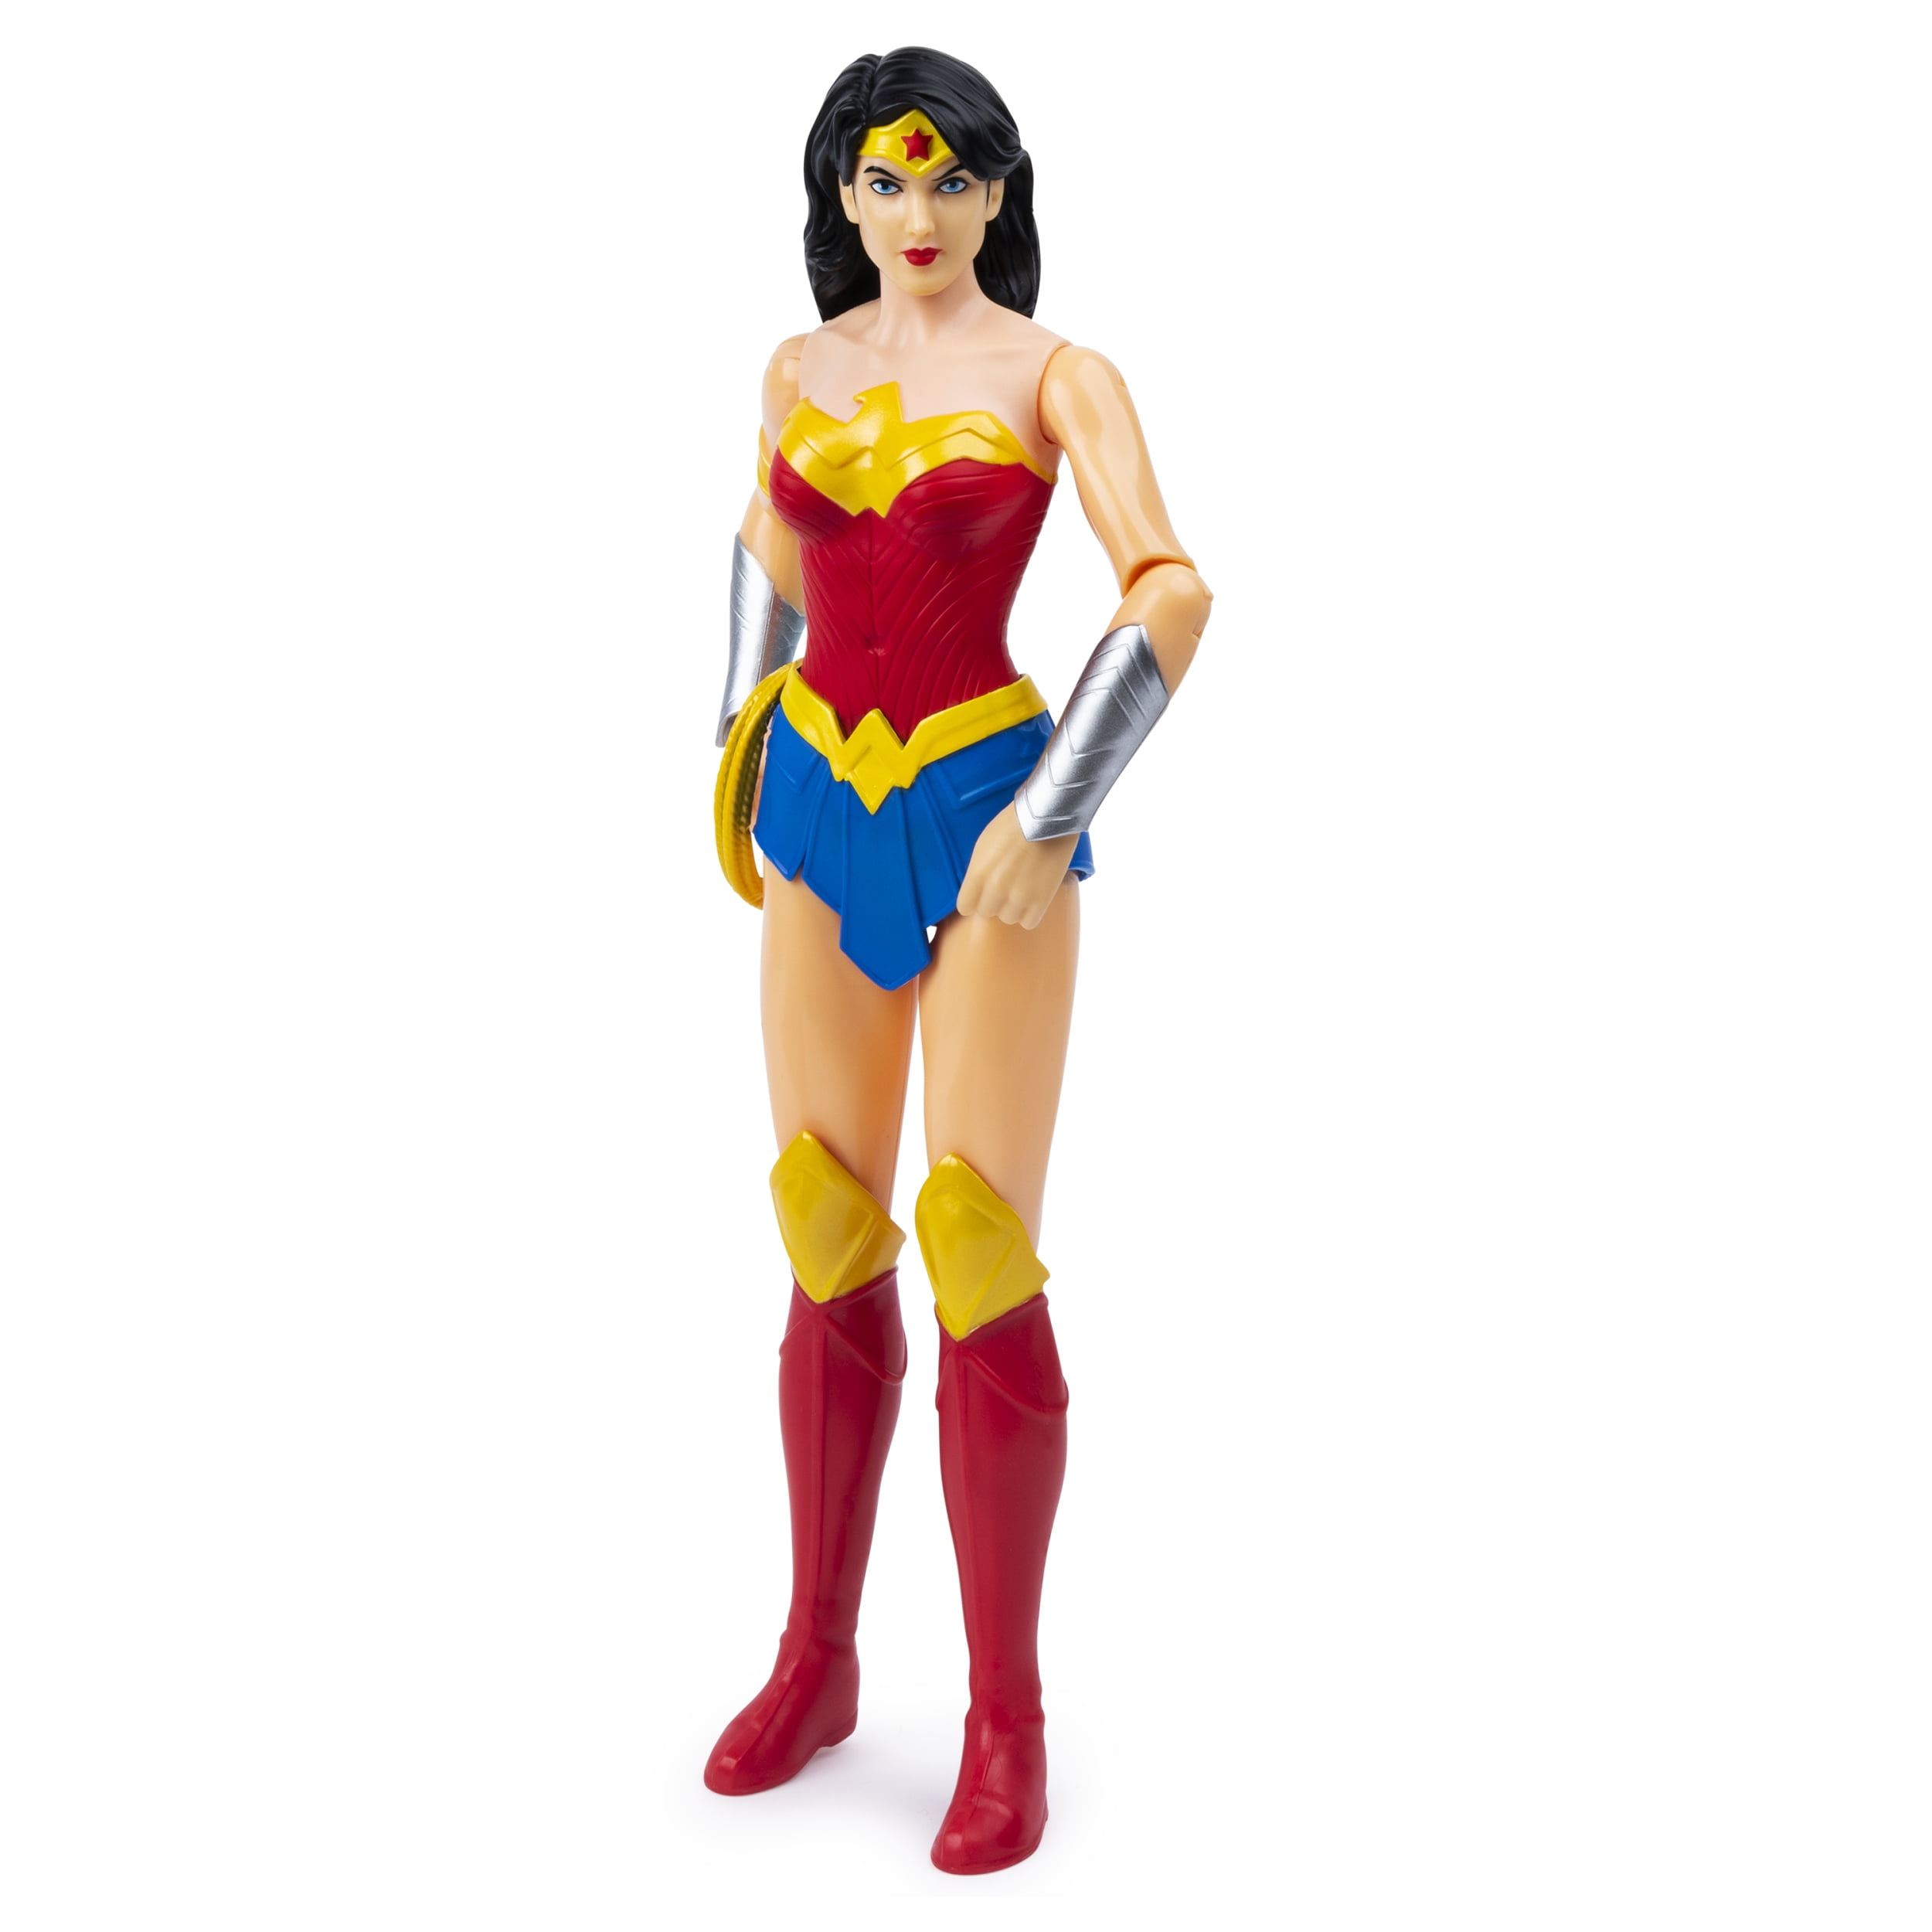 Wonder Woman 12 Inch  Action figure  misb new   dc comics unlimited  mint 